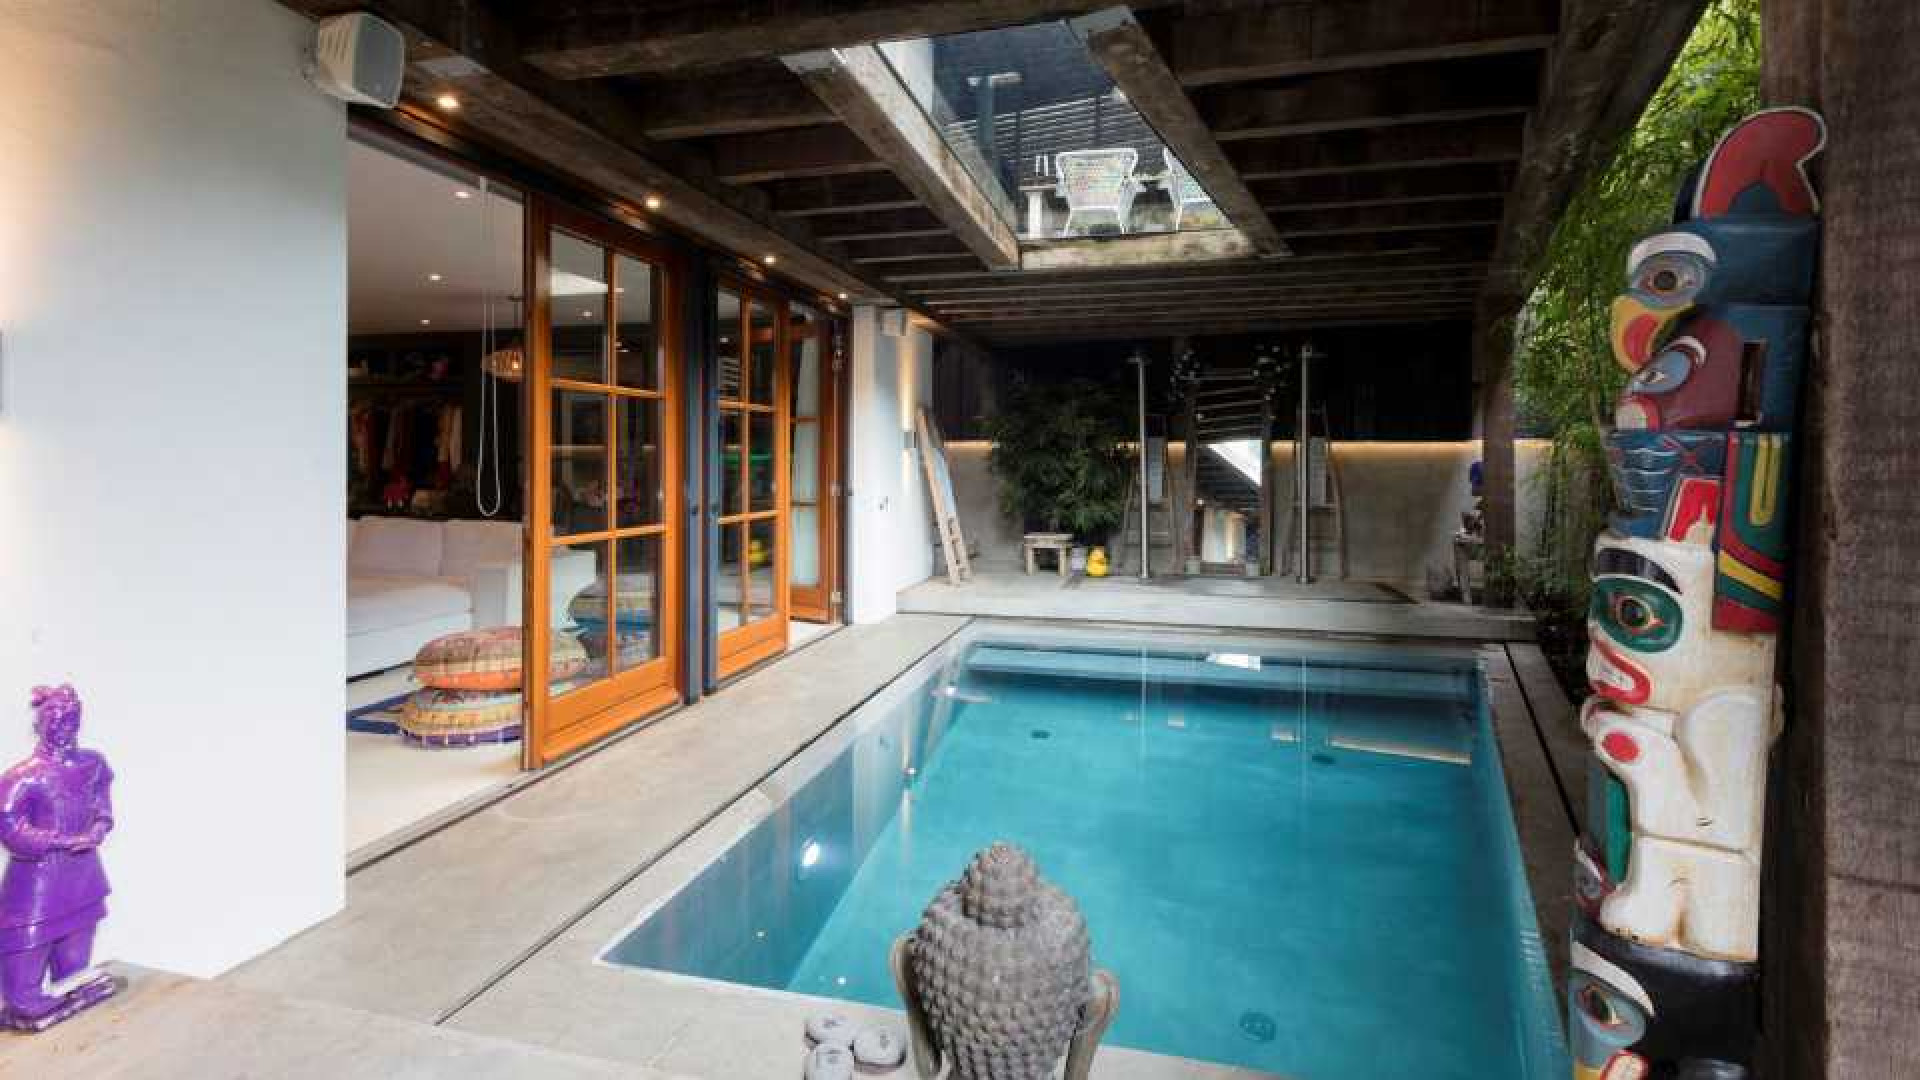 Patty Brard verkoopt haar villa met forse winst. Zie foto's